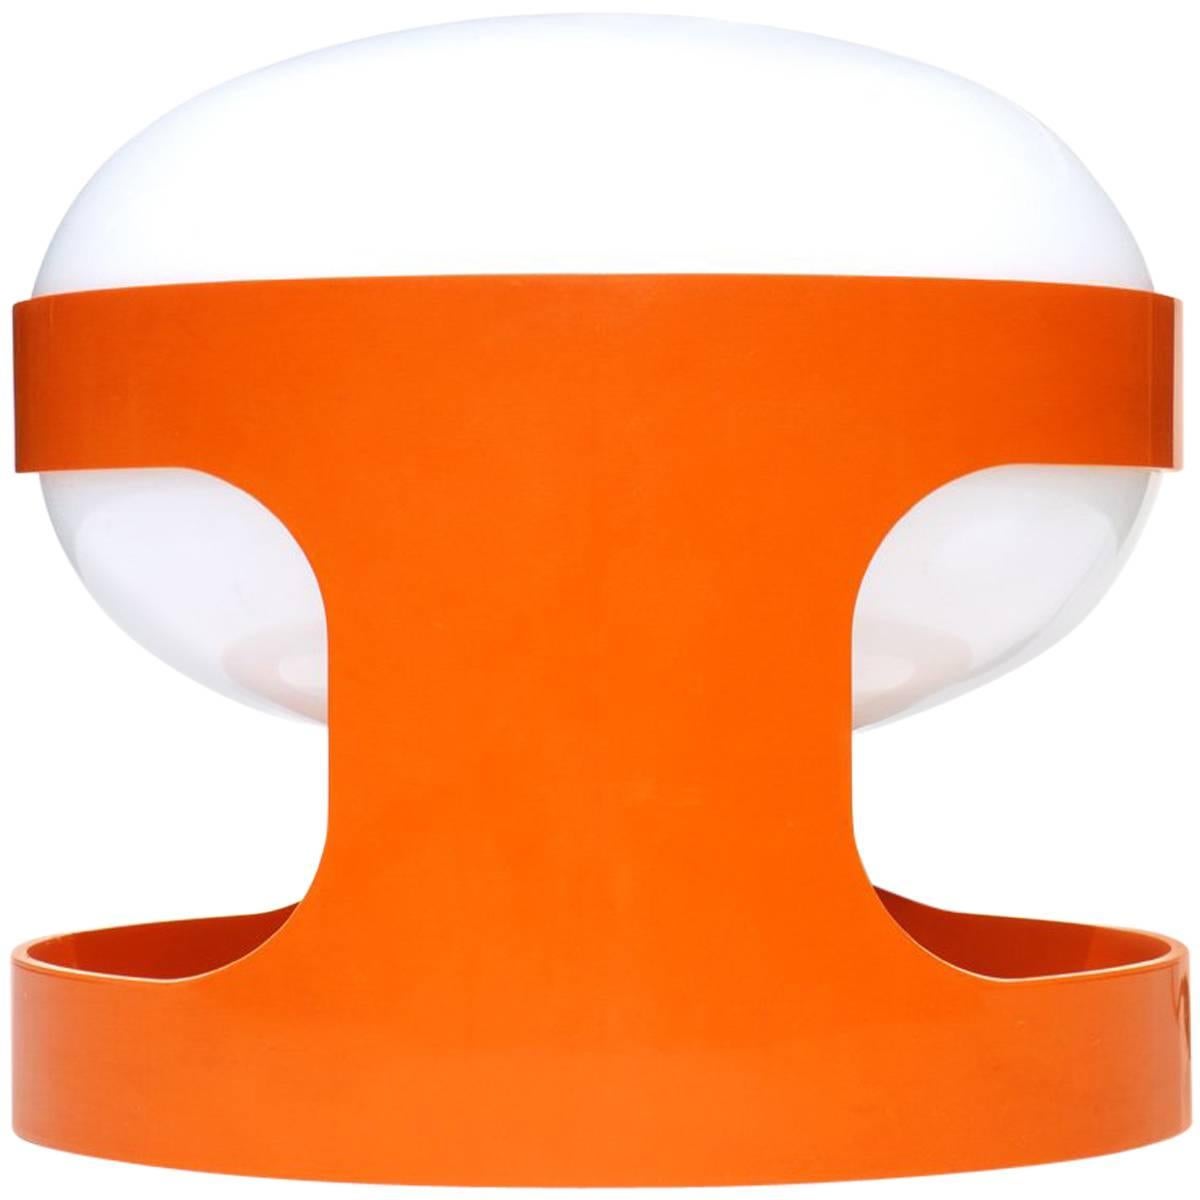 "KD27" Joe Colombo by Kartell 1960s Italian Design Orange Table Lamp